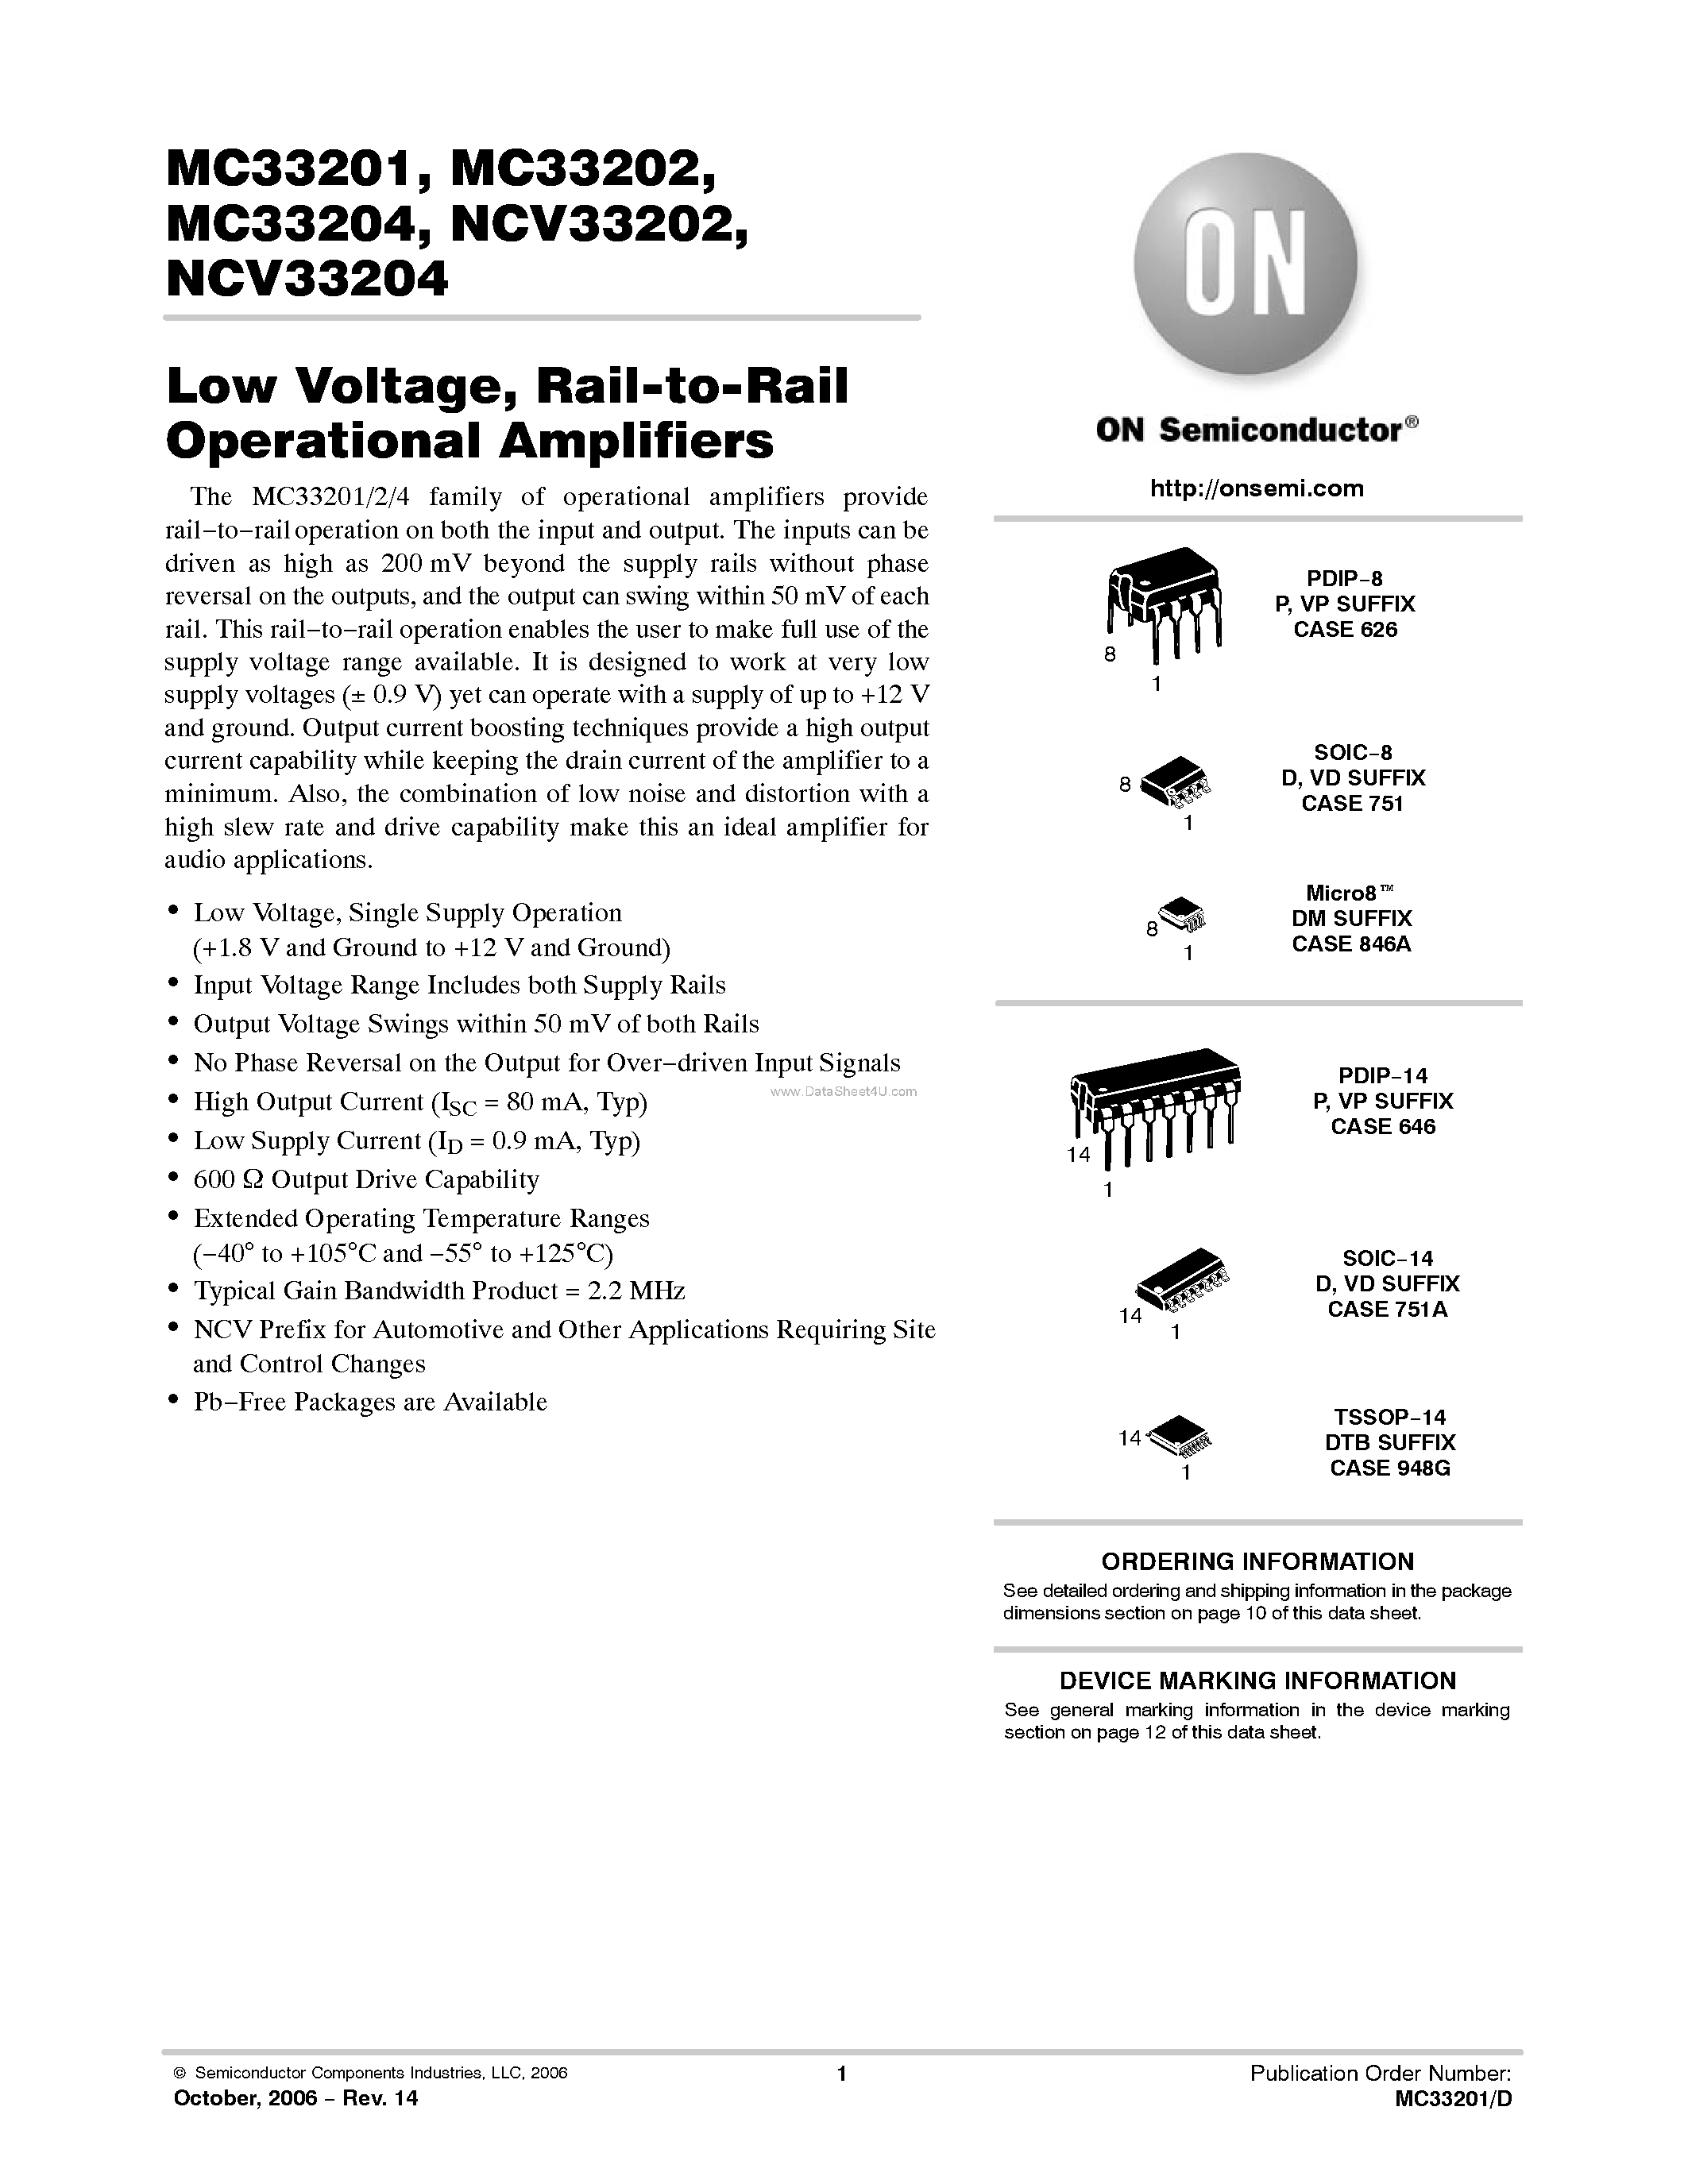 Datasheet MC33201 - (MC33201 - MC33204) Rail-to-Rail Operational Amplifiers page 1